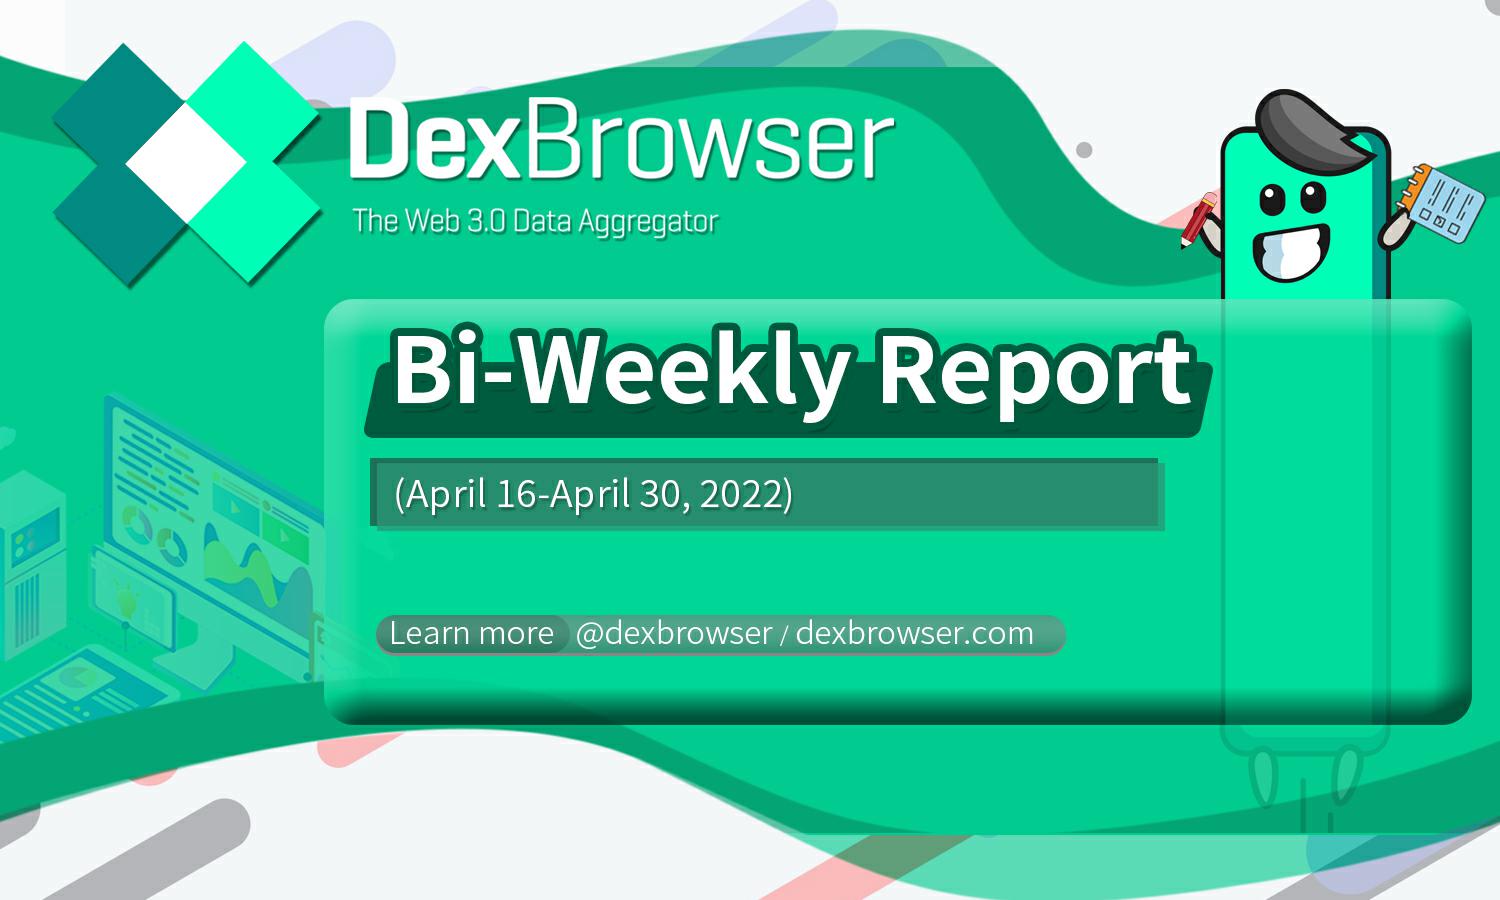 Dexbrowser Bi-Weekly Report (April 16-April 30, 2022)